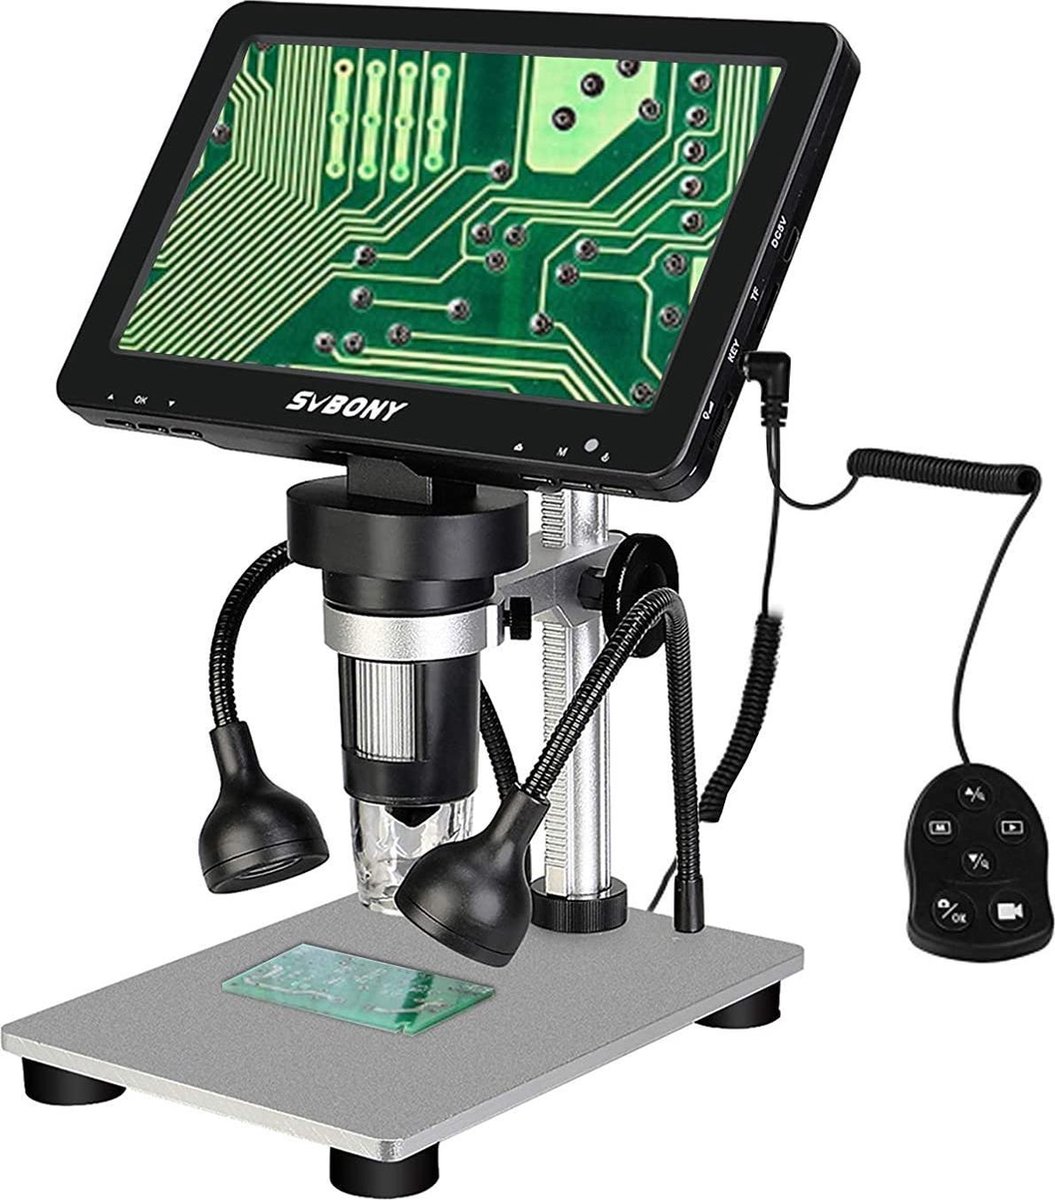 Svbony SV604 Digitale Microscoop - 7 Inch LCD HD Scherm 1200X Draagbare Microscoop Met Bedrade Afstandsbediening - Voor Lesgeven - Printplaten - Antiek Observeren - Sieraden Identificatie